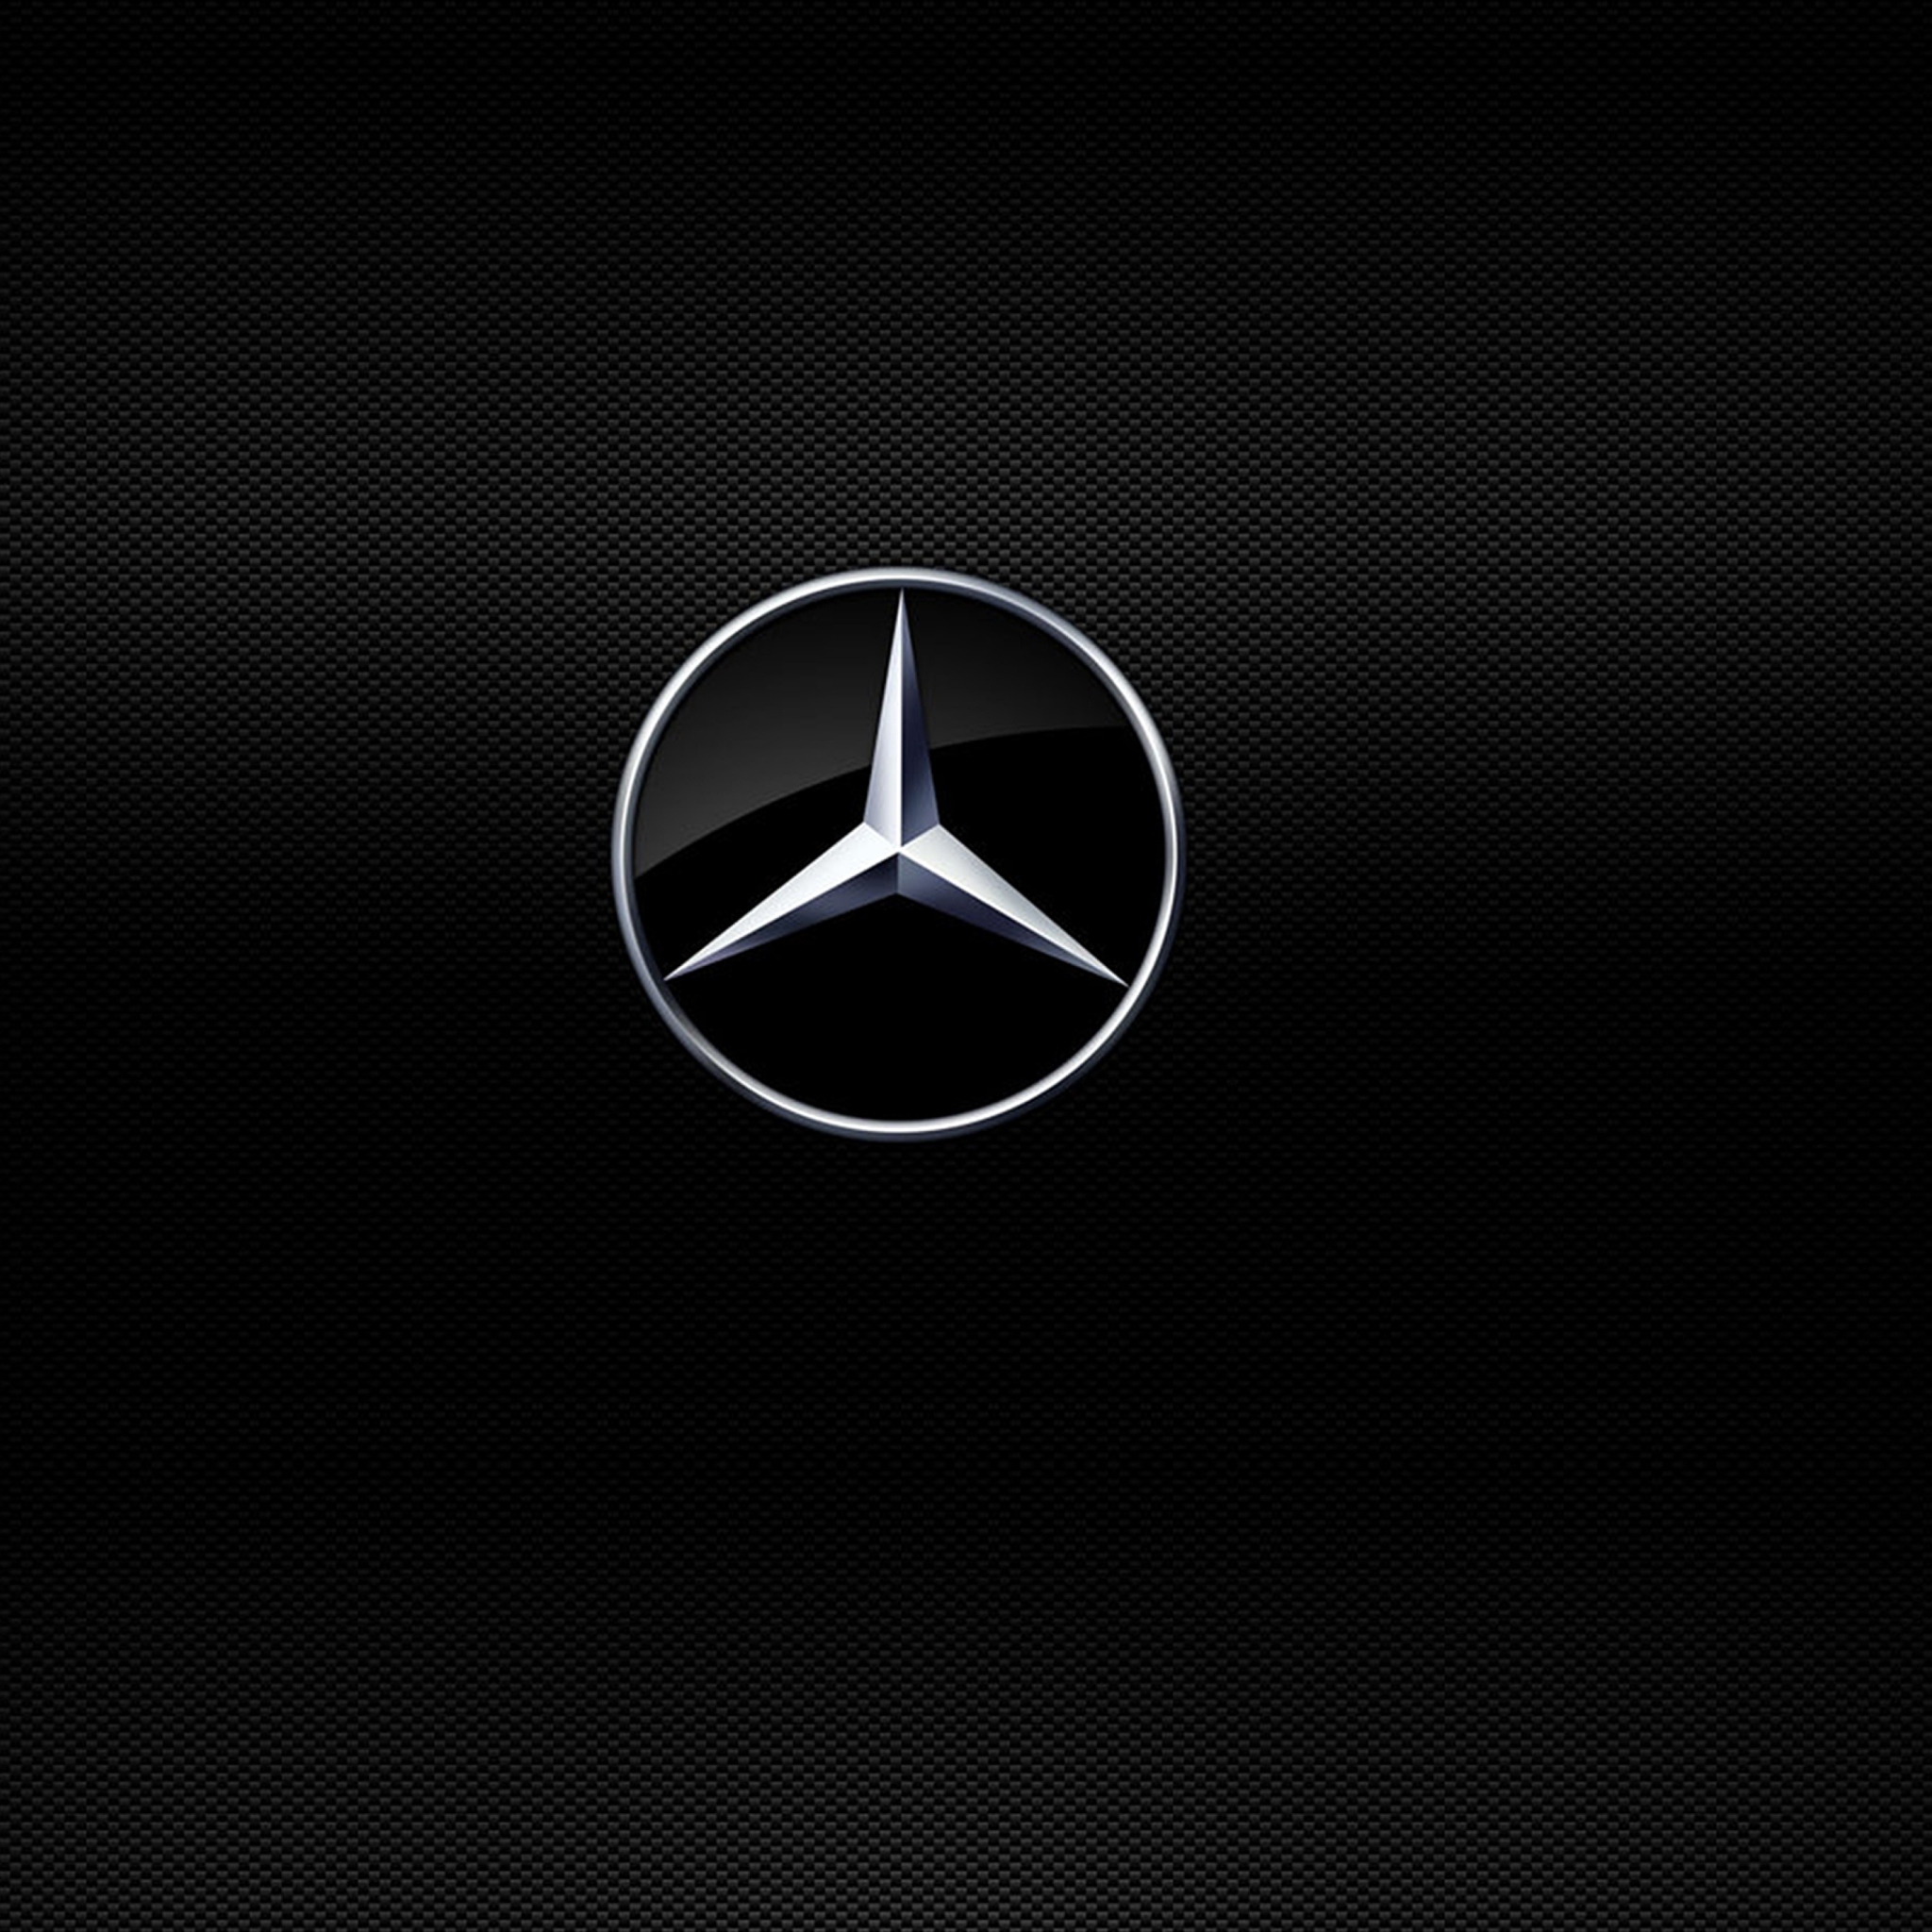 Mercedes Logo Wallpaper For Ipad Mini 2ベンツ モノトーン系 ブラック ホワイト Ipadタブレット壁紙 画像 Naver まとめ